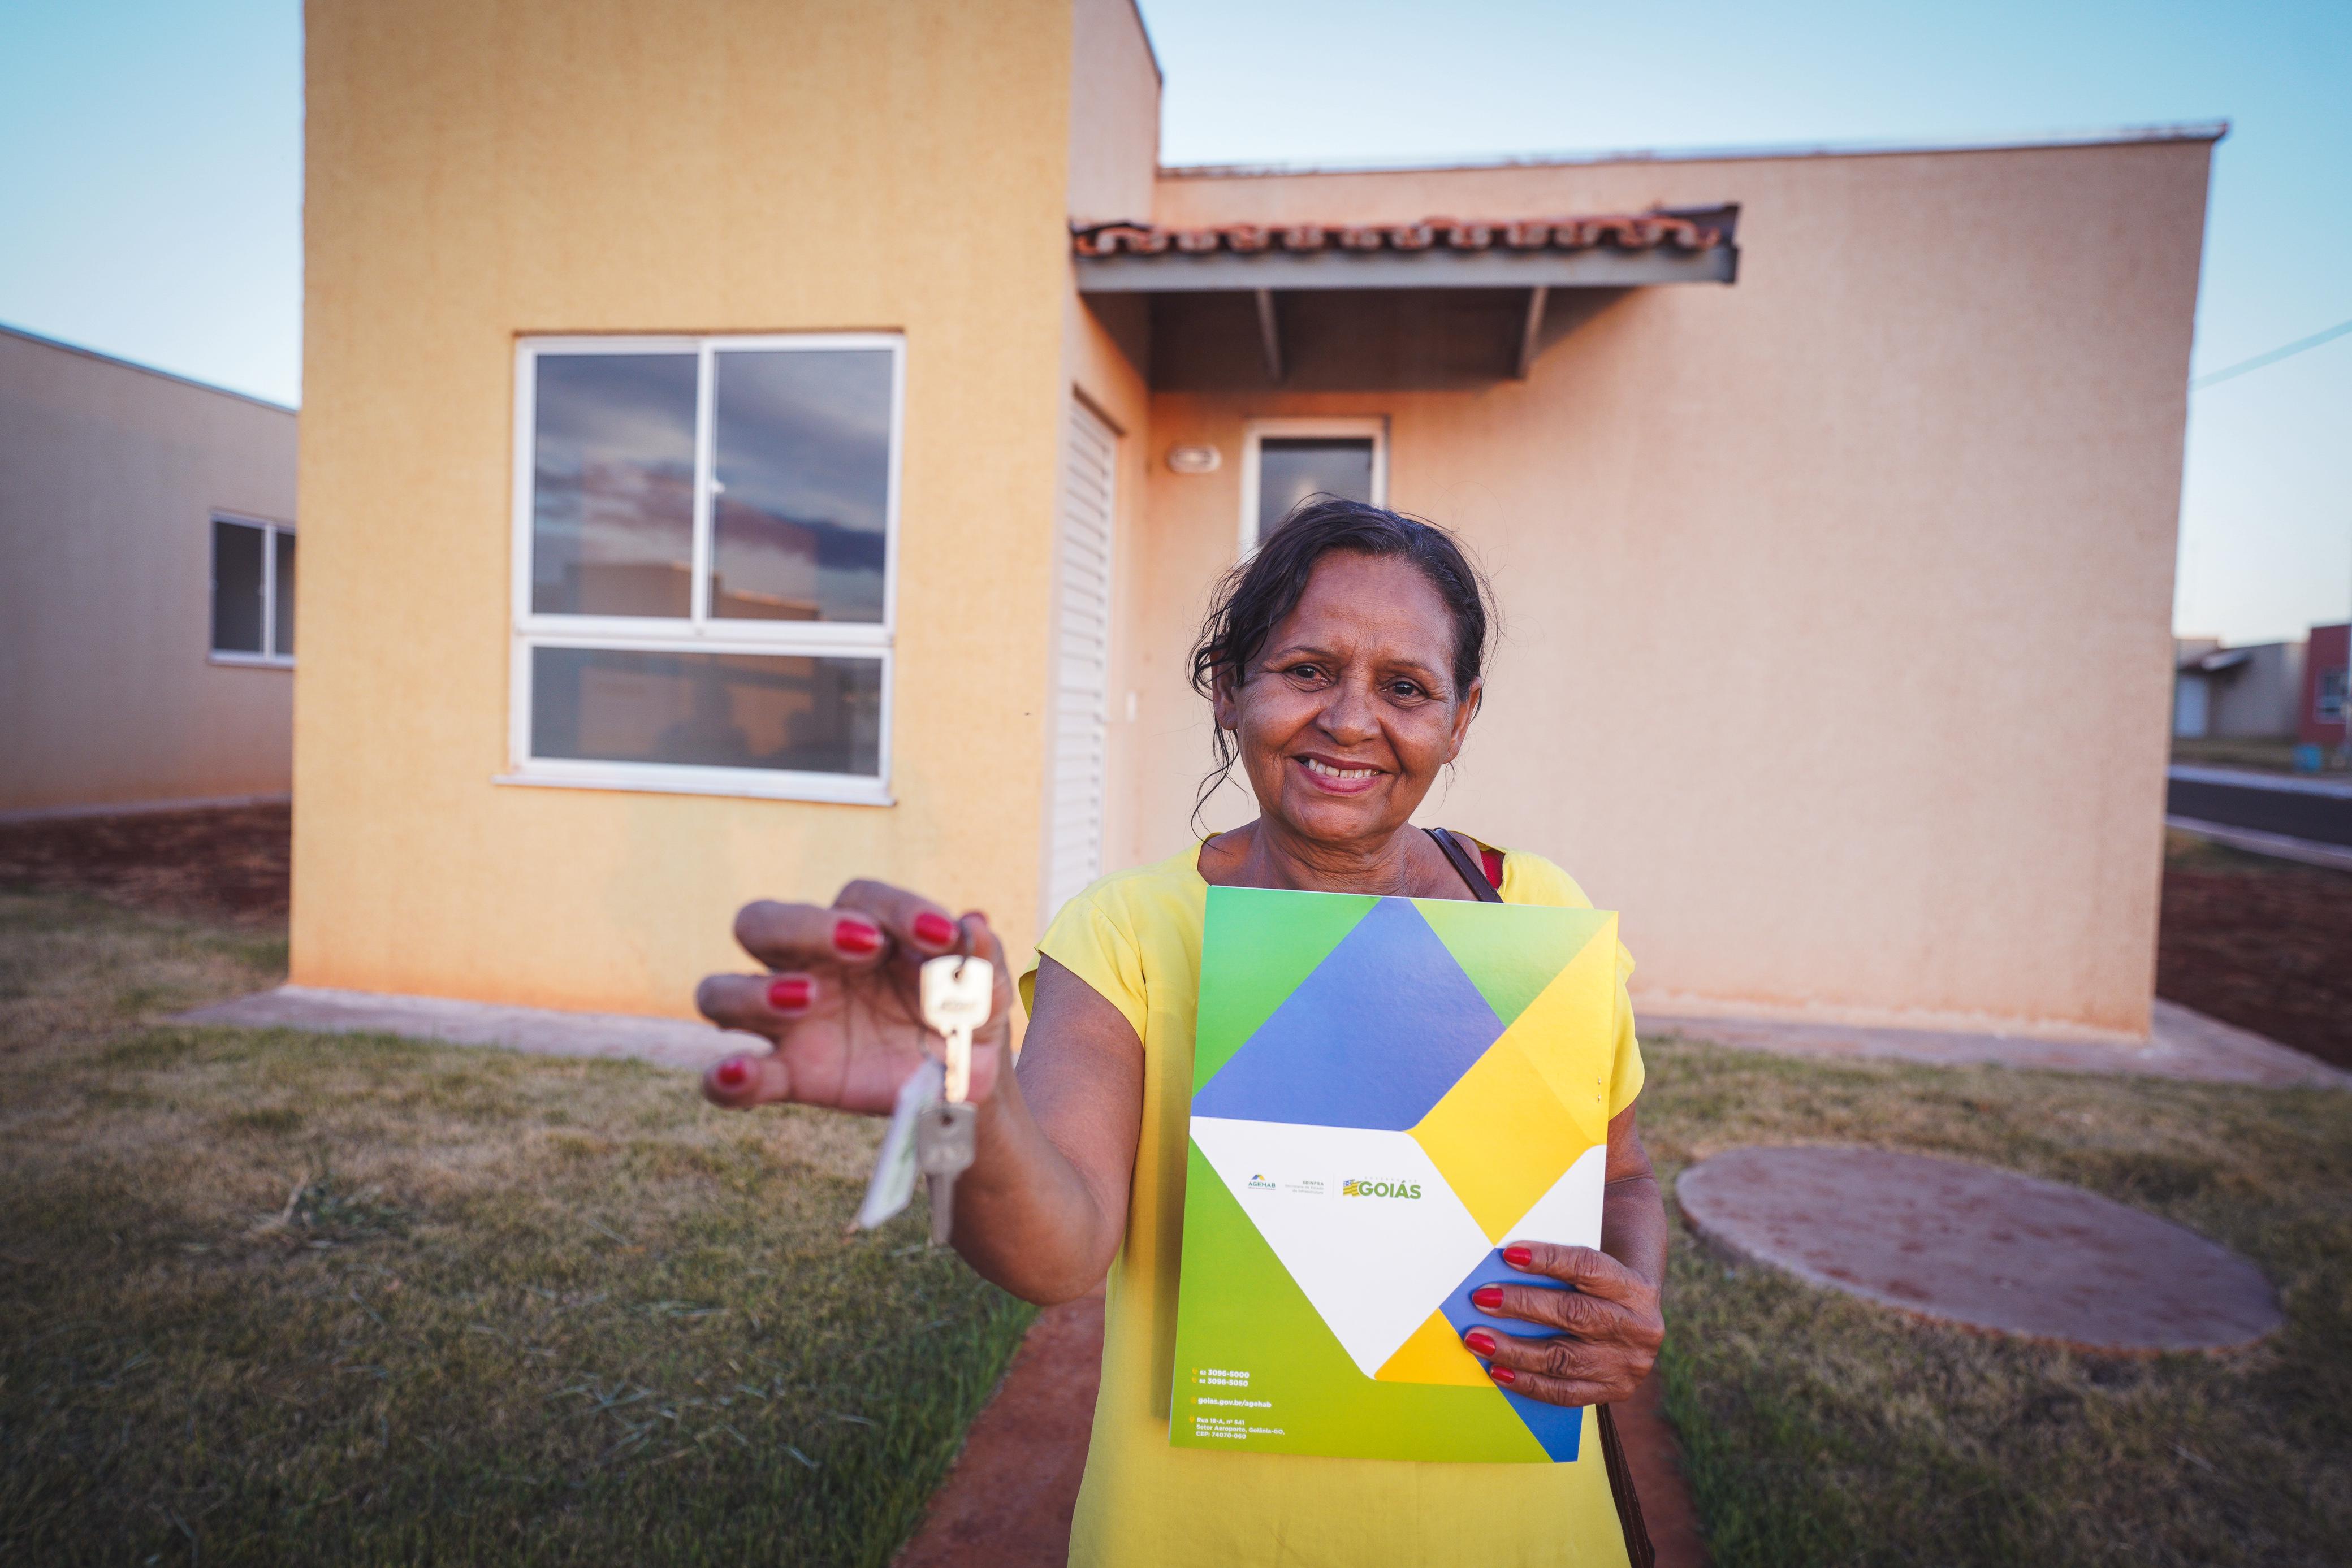 100 moradores de Quirinópolis recebem as chaves da casa própria